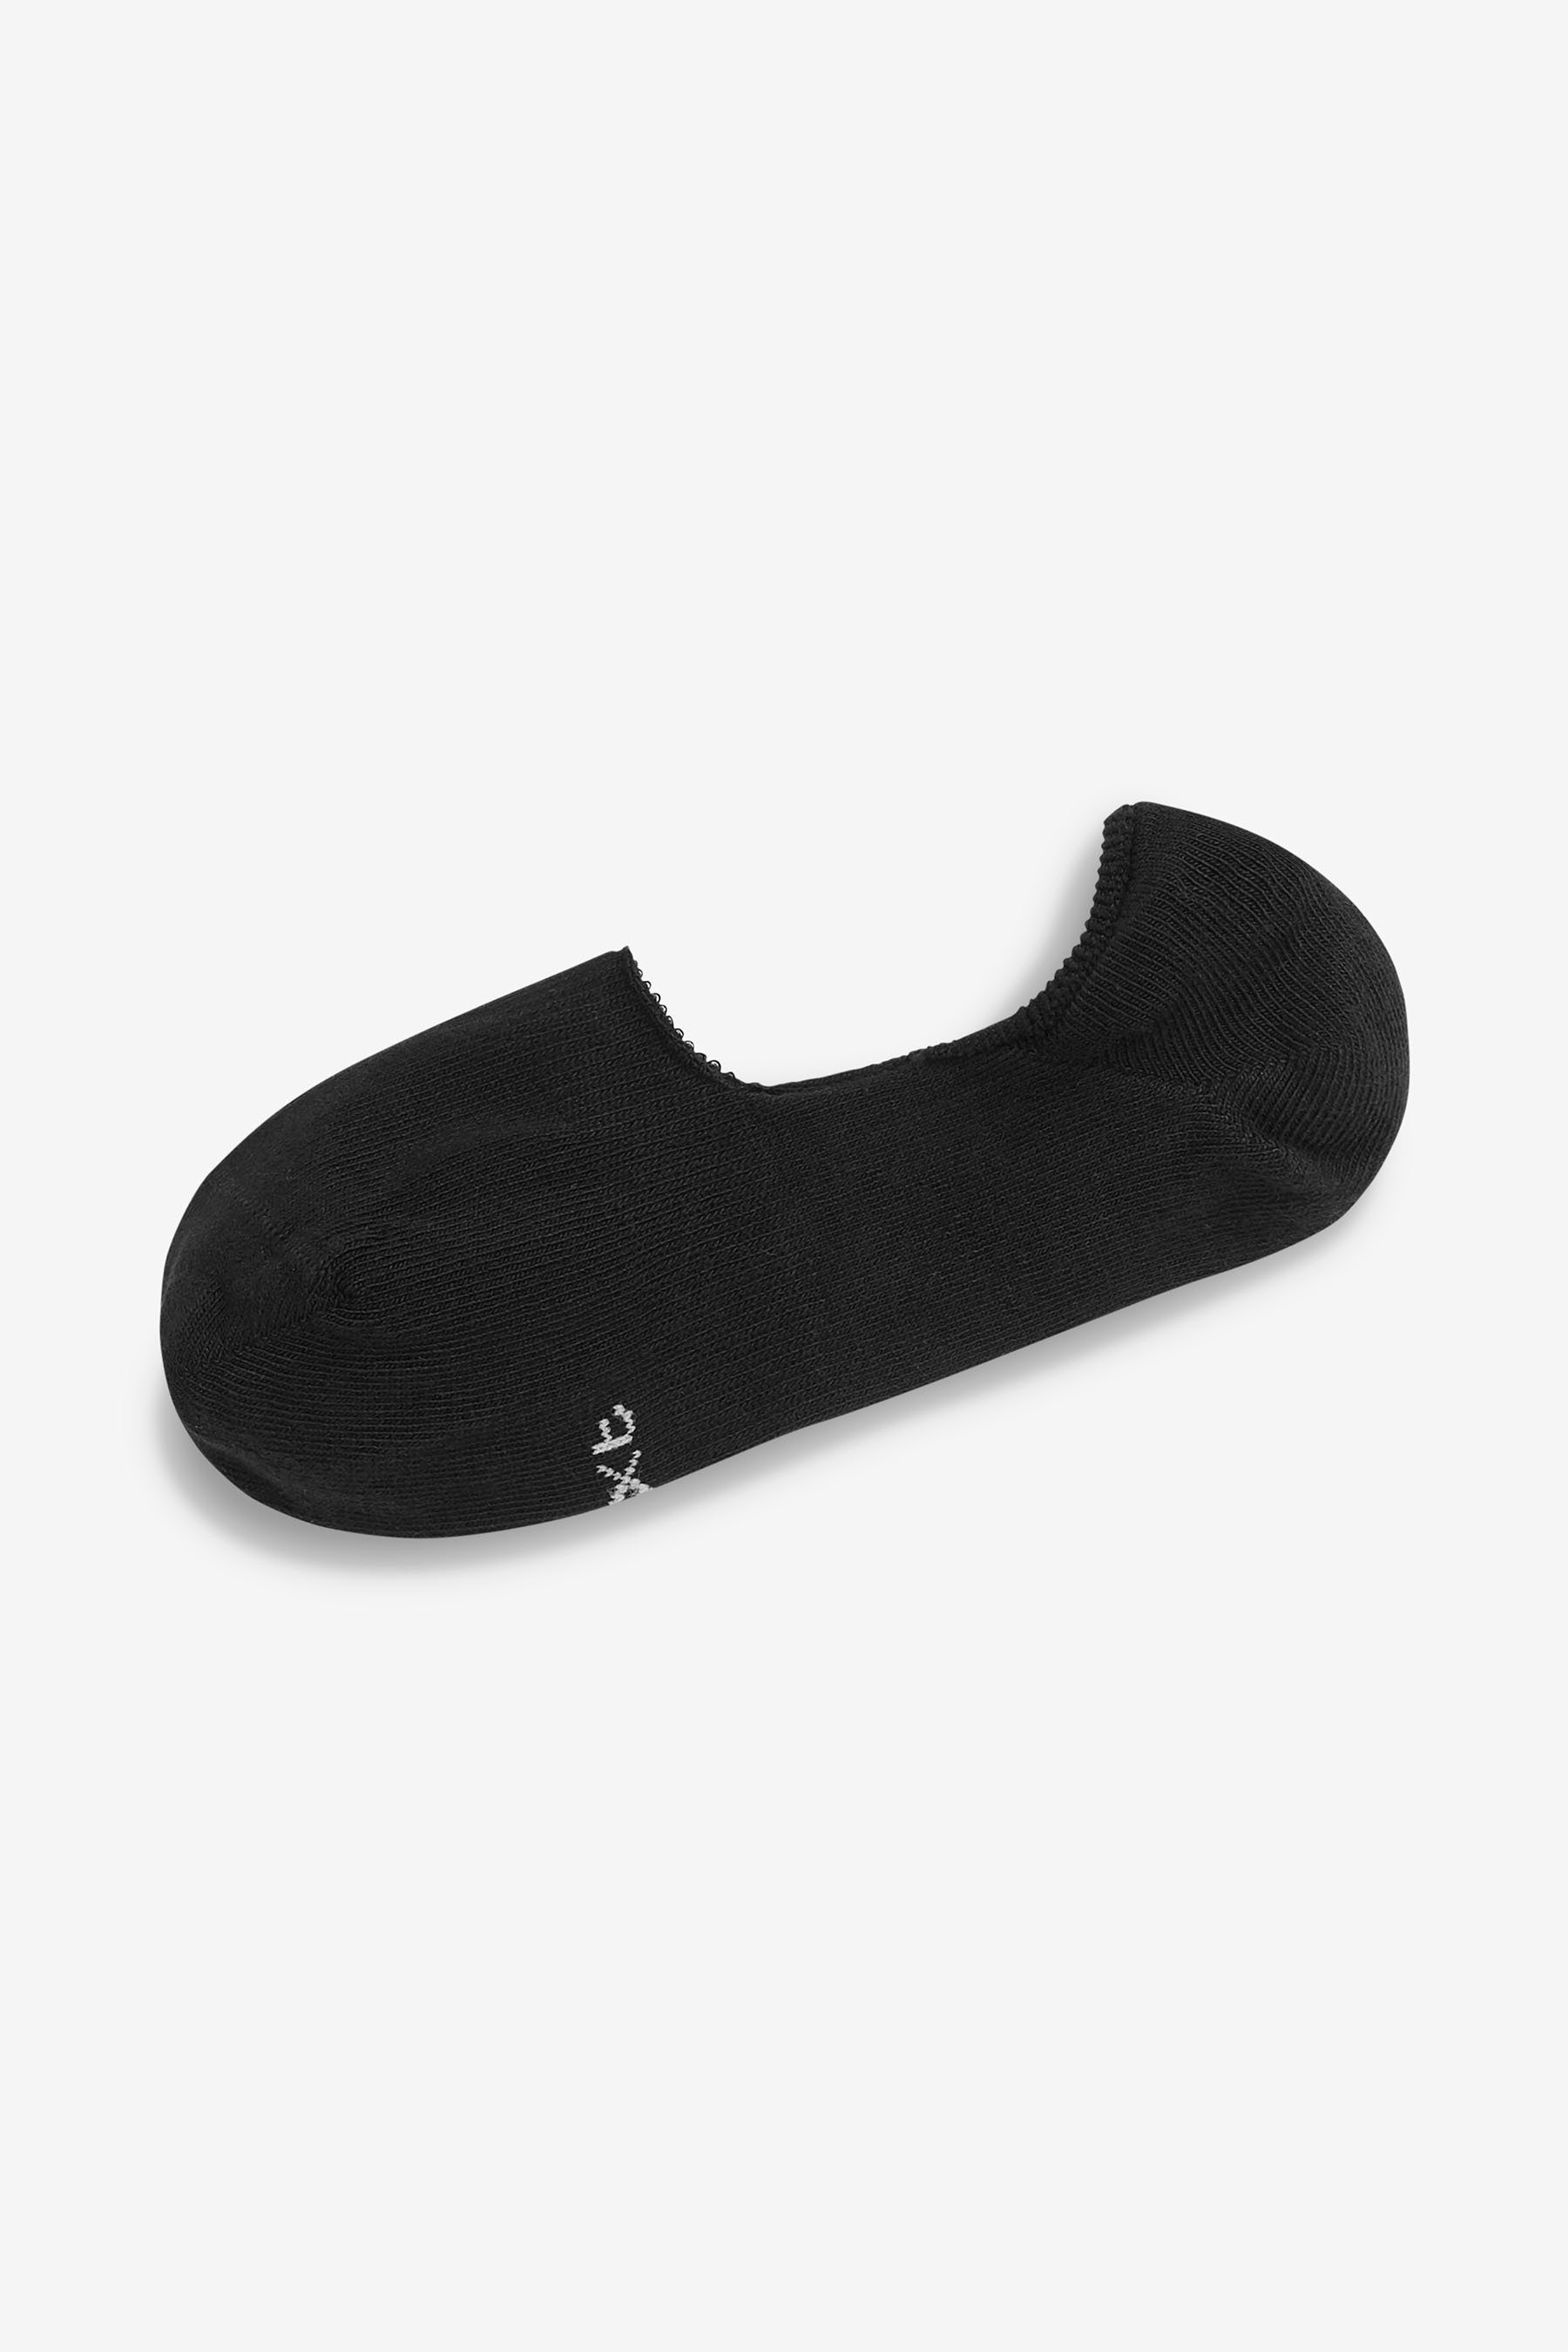 (5-Paar) Next Sneaker-Socken Black unsichtbare Füßlinge x 5